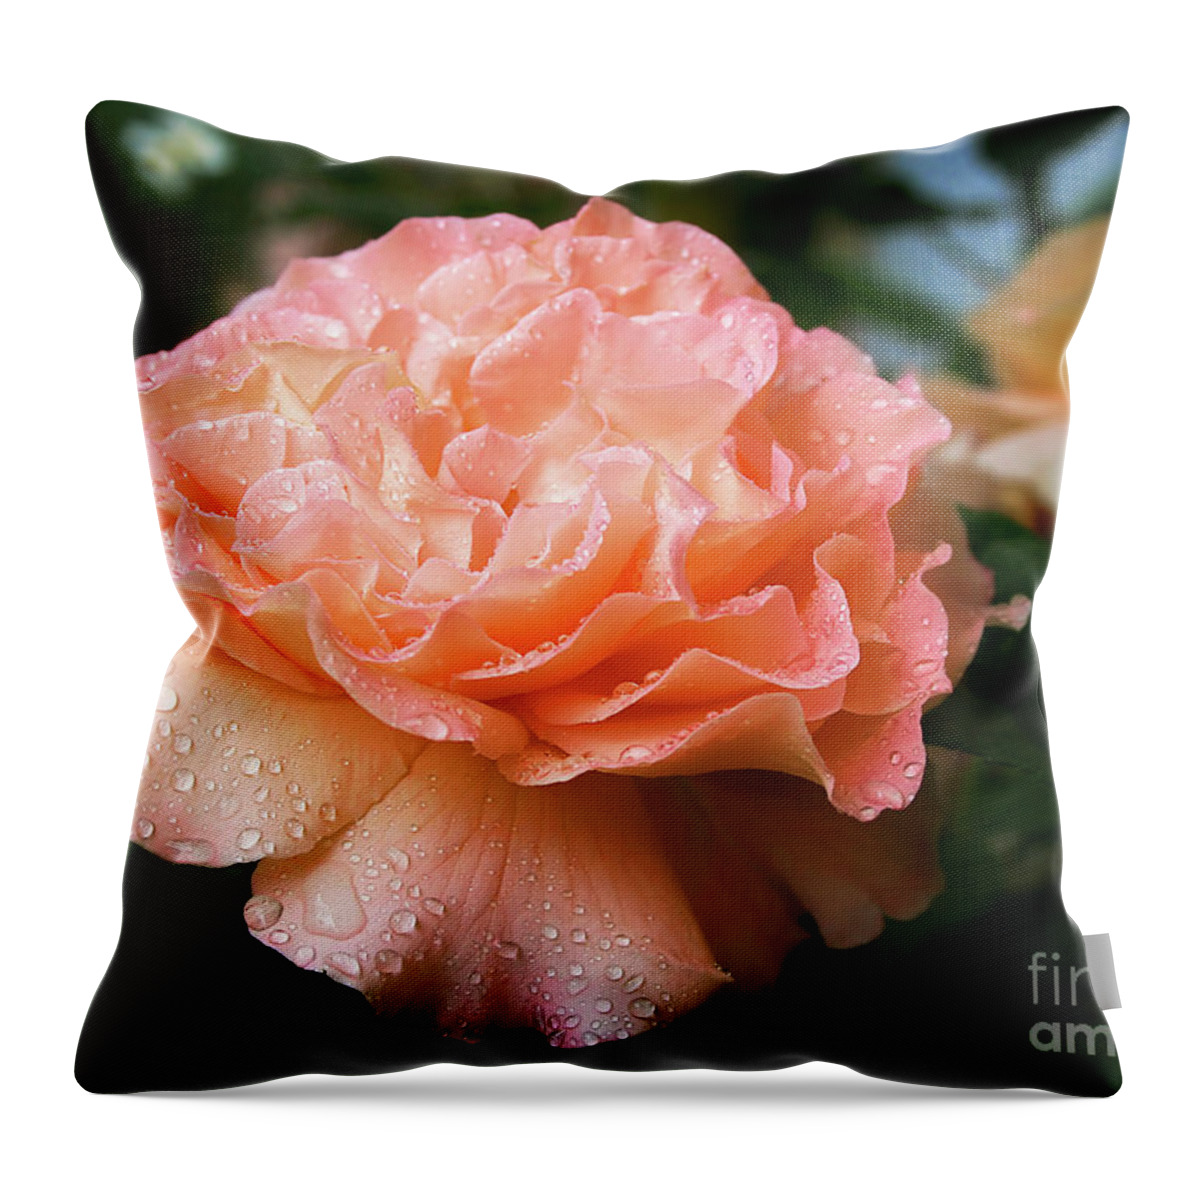 Gabriele Pomykaj Throw Pillow featuring the photograph Pretty Peach Peony Flower by Gabriele Pomykaj